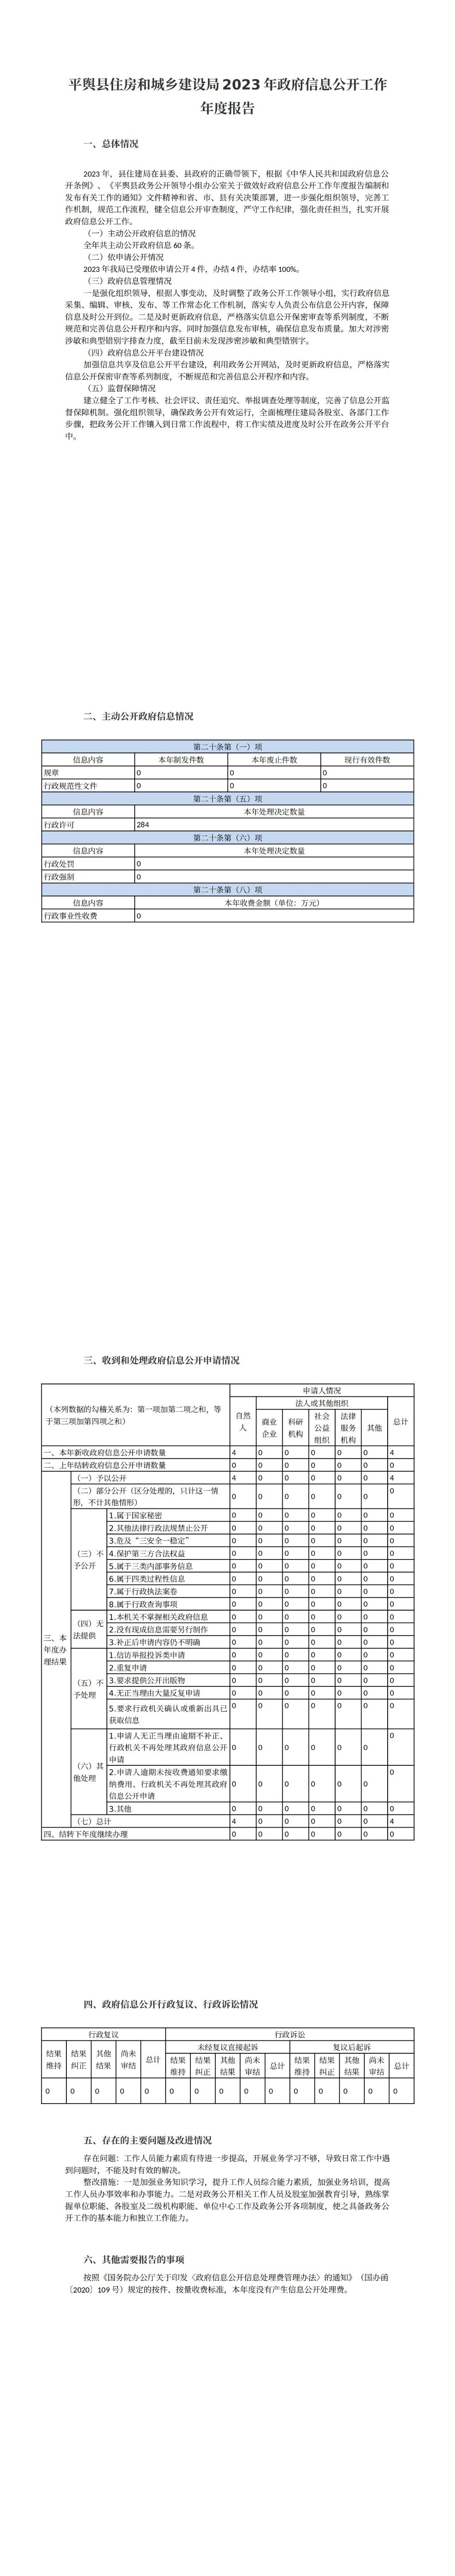 平舆县住房和城乡建设局2023年政府信息公开工作年度报告_00.jpg